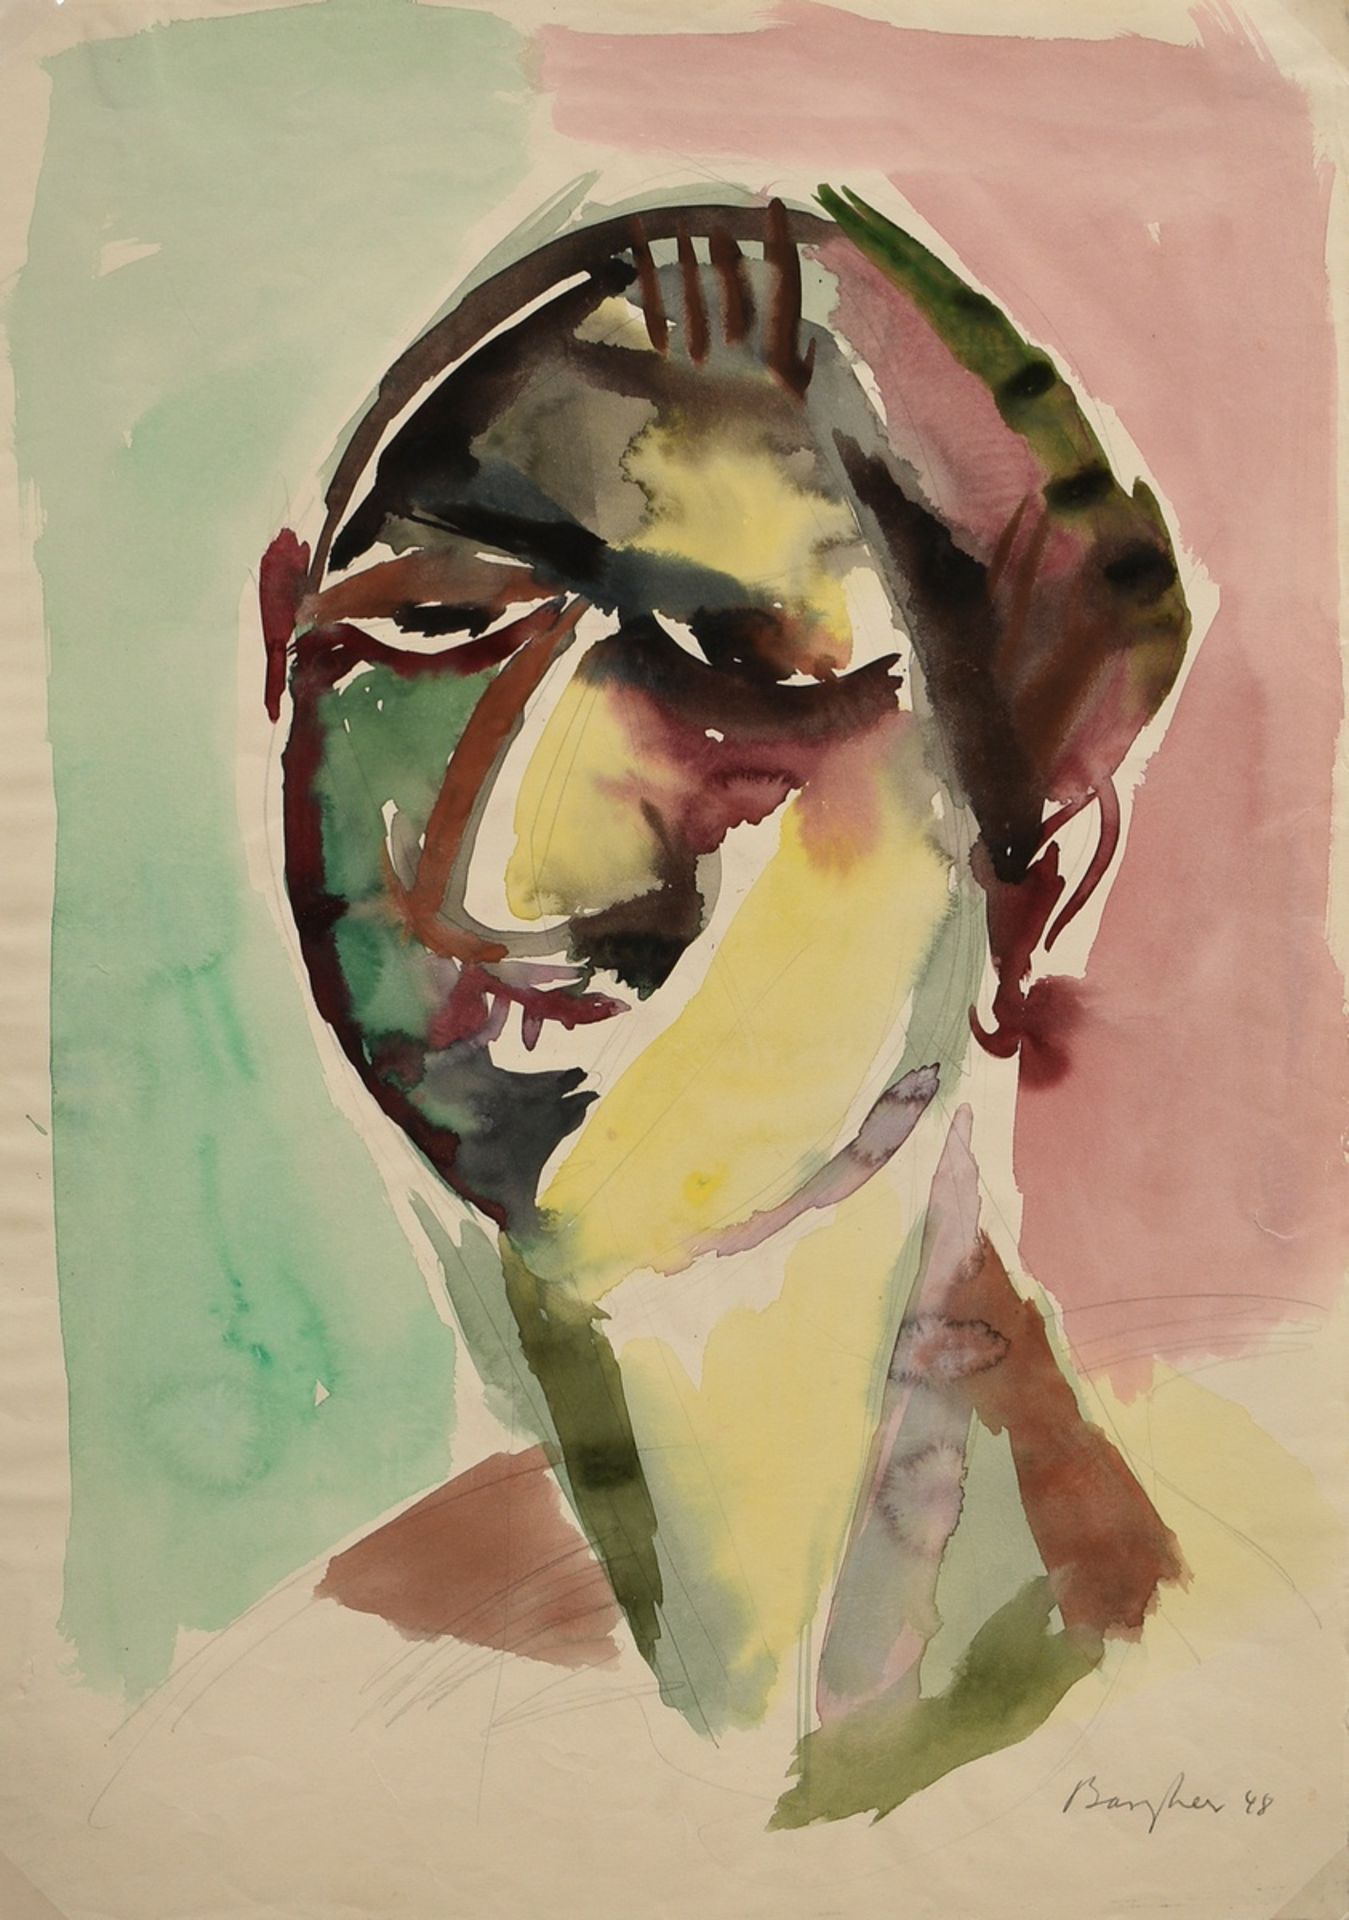 Bargheer, Eduard (1901-1979) "Portrait" 1948, watercolour/pencil, sign./dat. lower right, 49.8x34.8